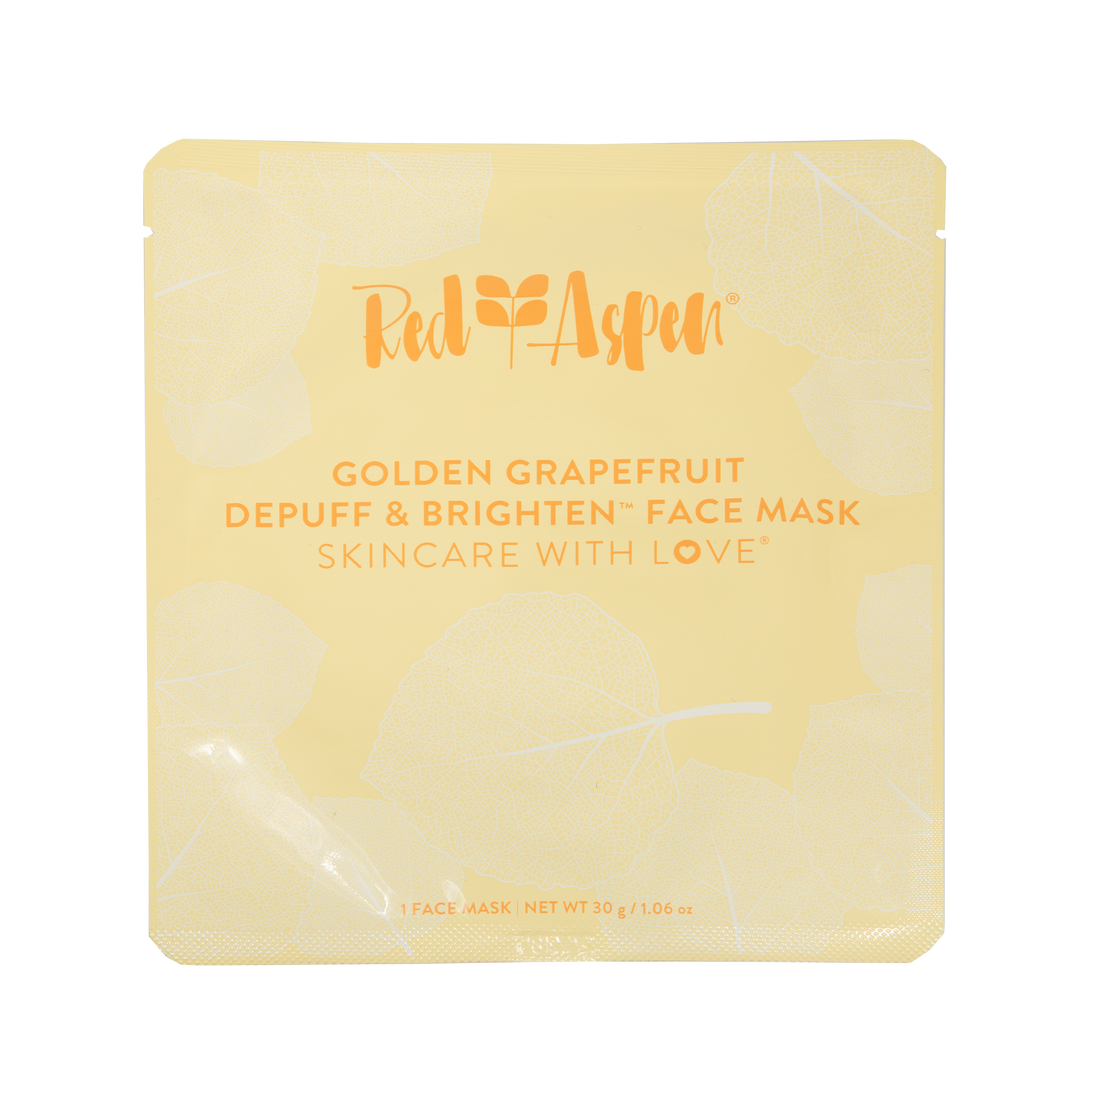 Golden Grapefruit Depuff & Brighten Face Mask